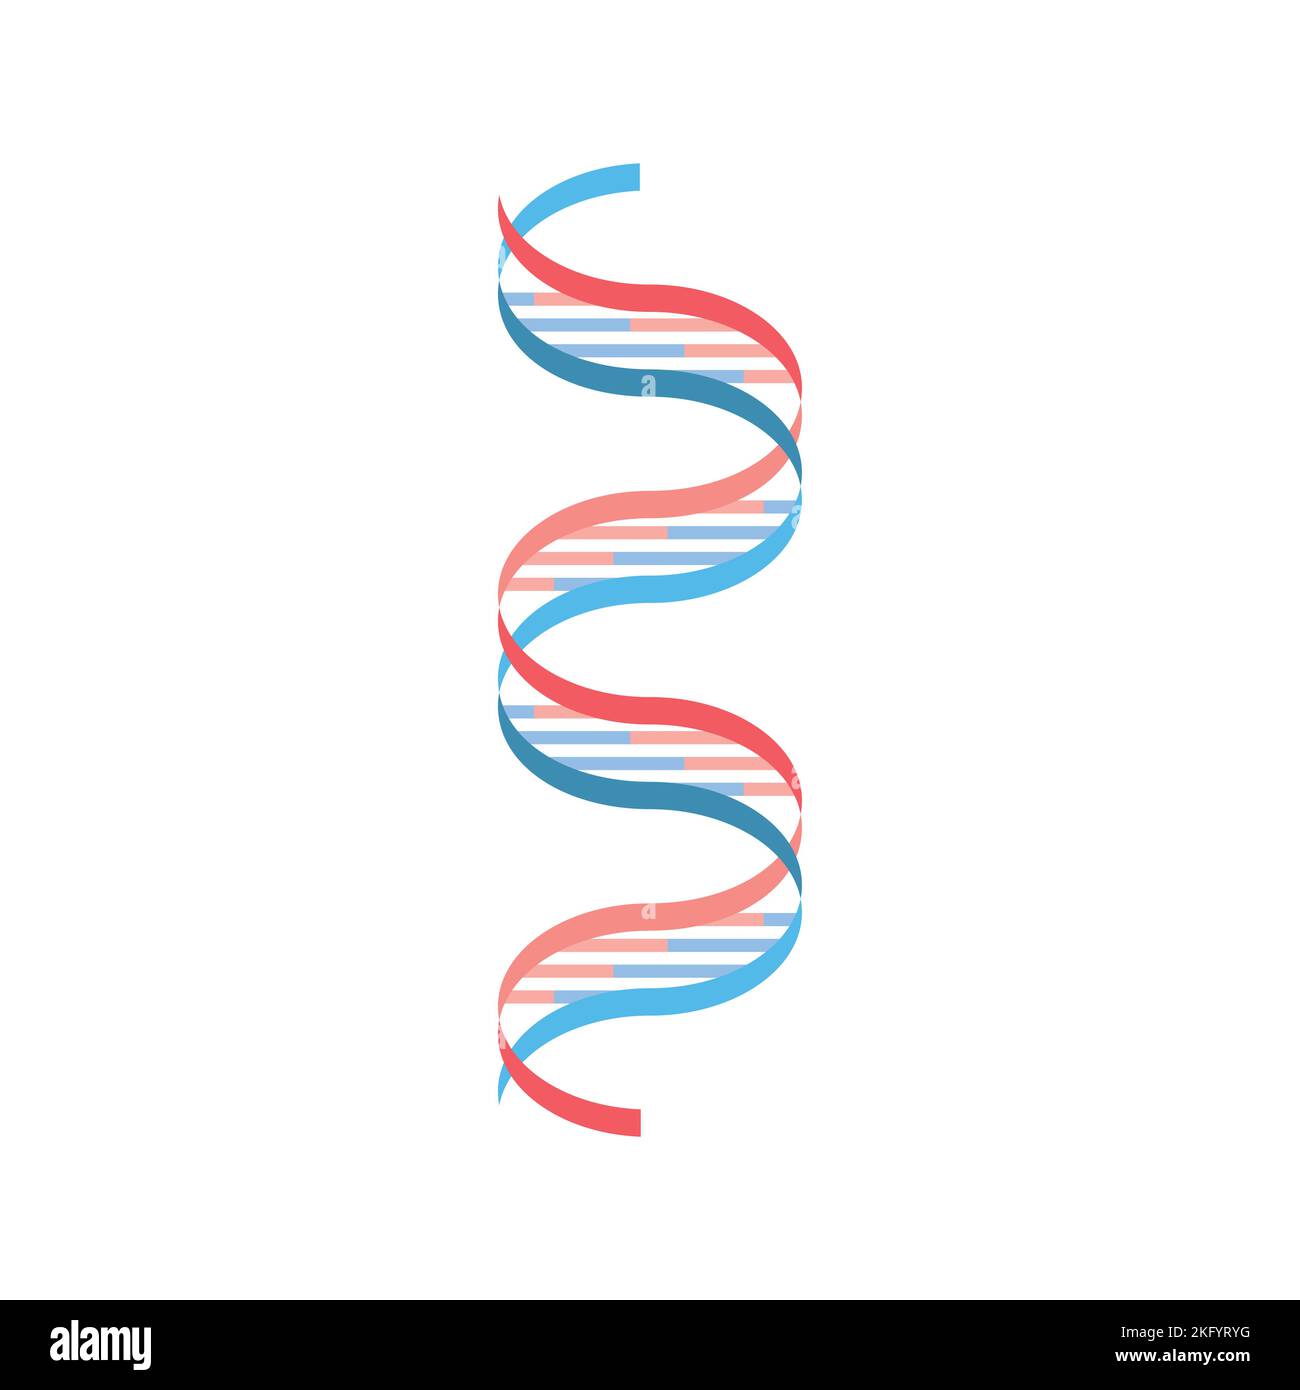 Progettazione scientifica di Watson e Crick DNA Model. Simboli colorati. Illustrazione vettoriale. Illustrazione Vettoriale